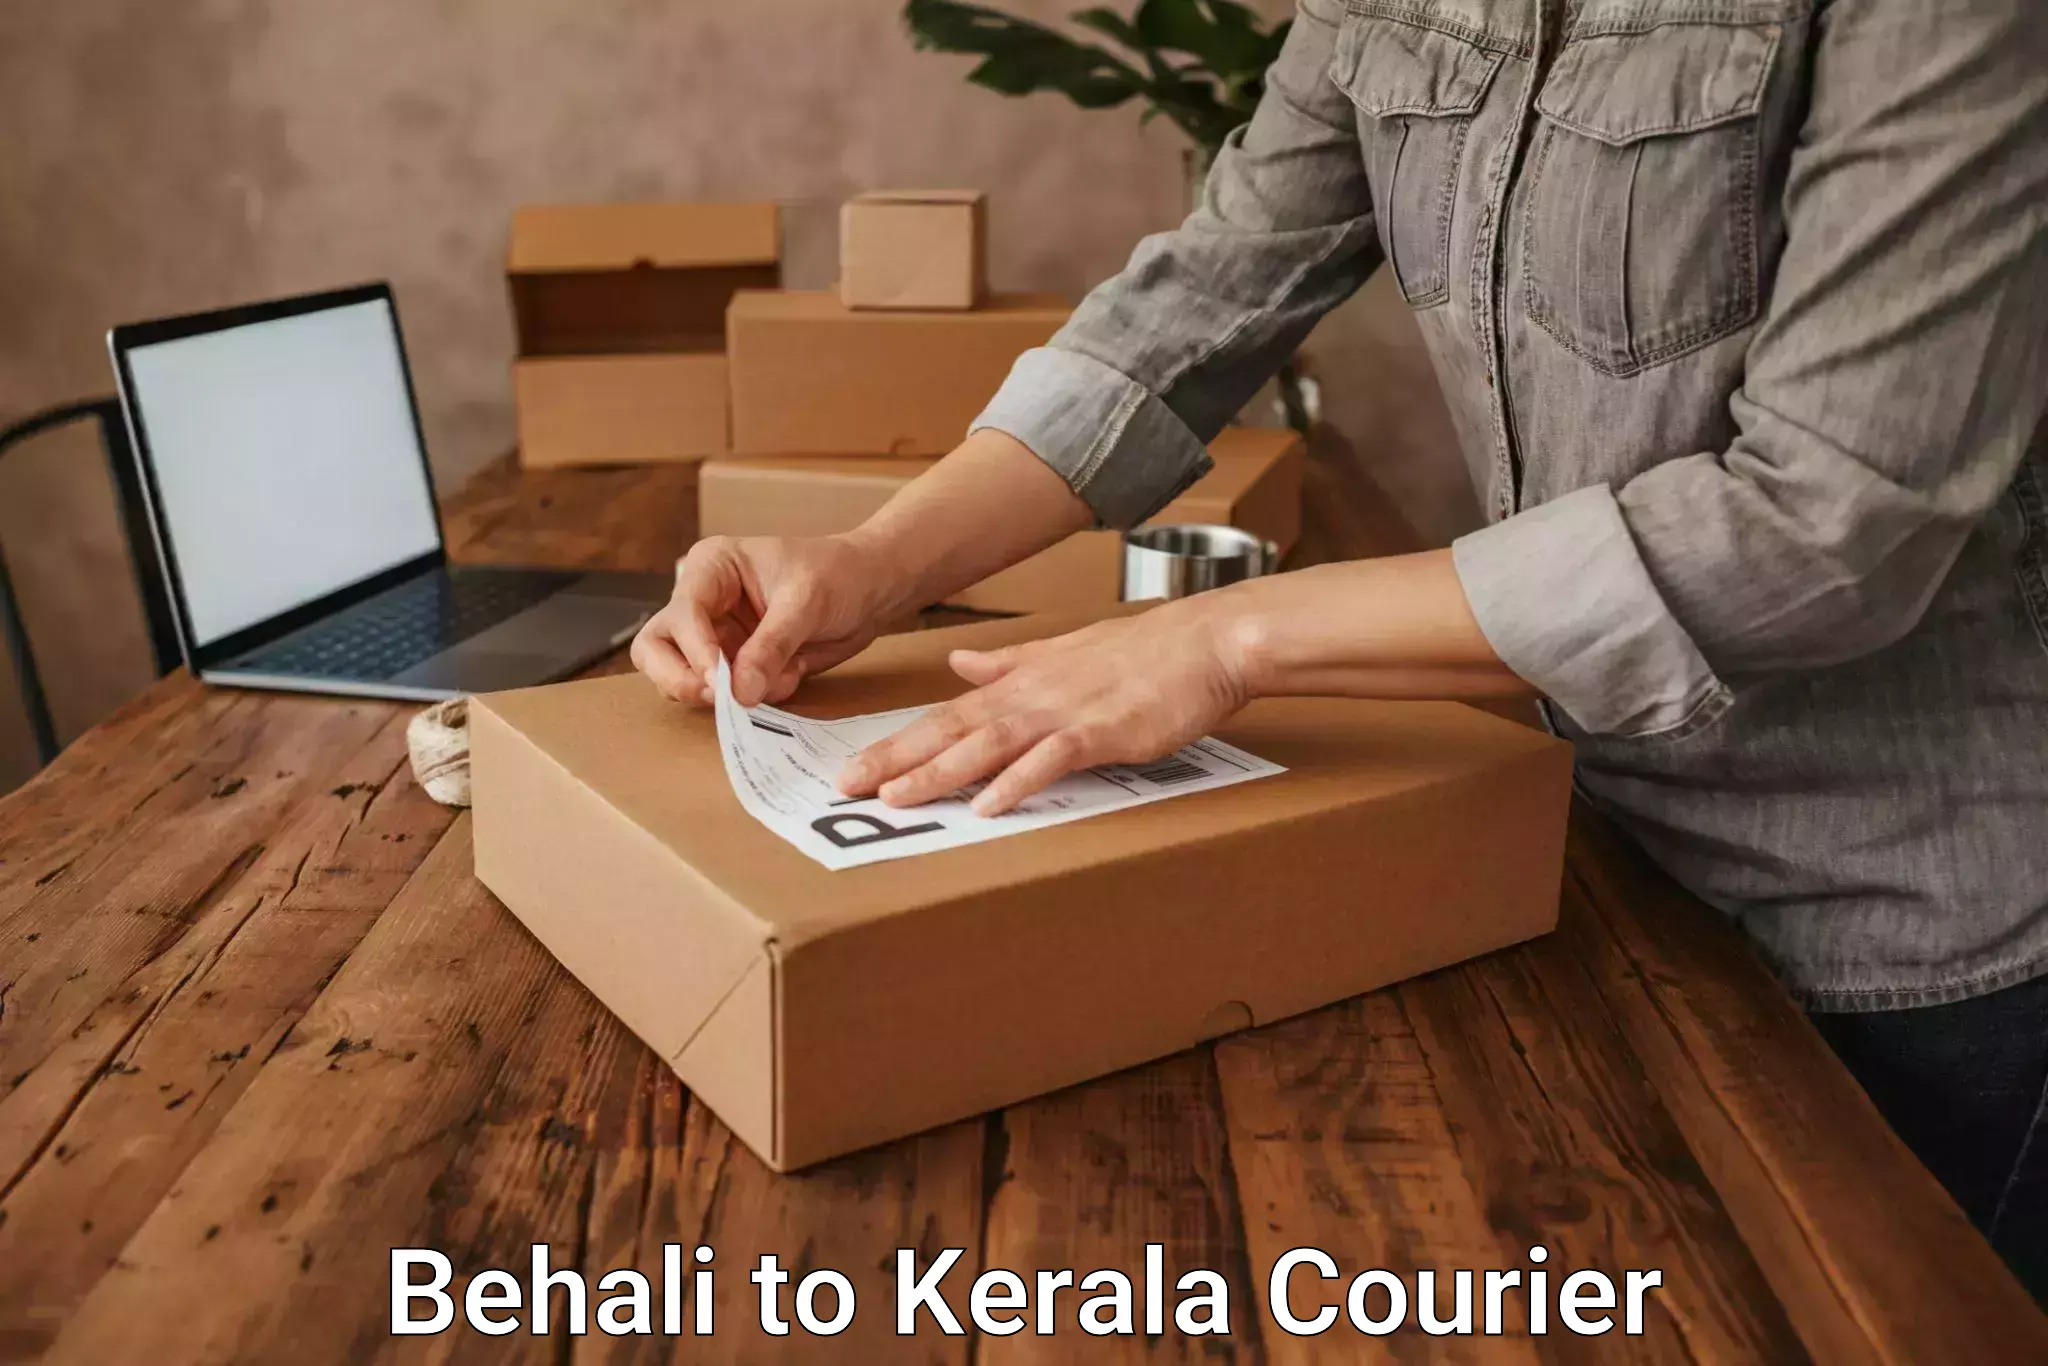 Courier service comparison Behali to Adimali